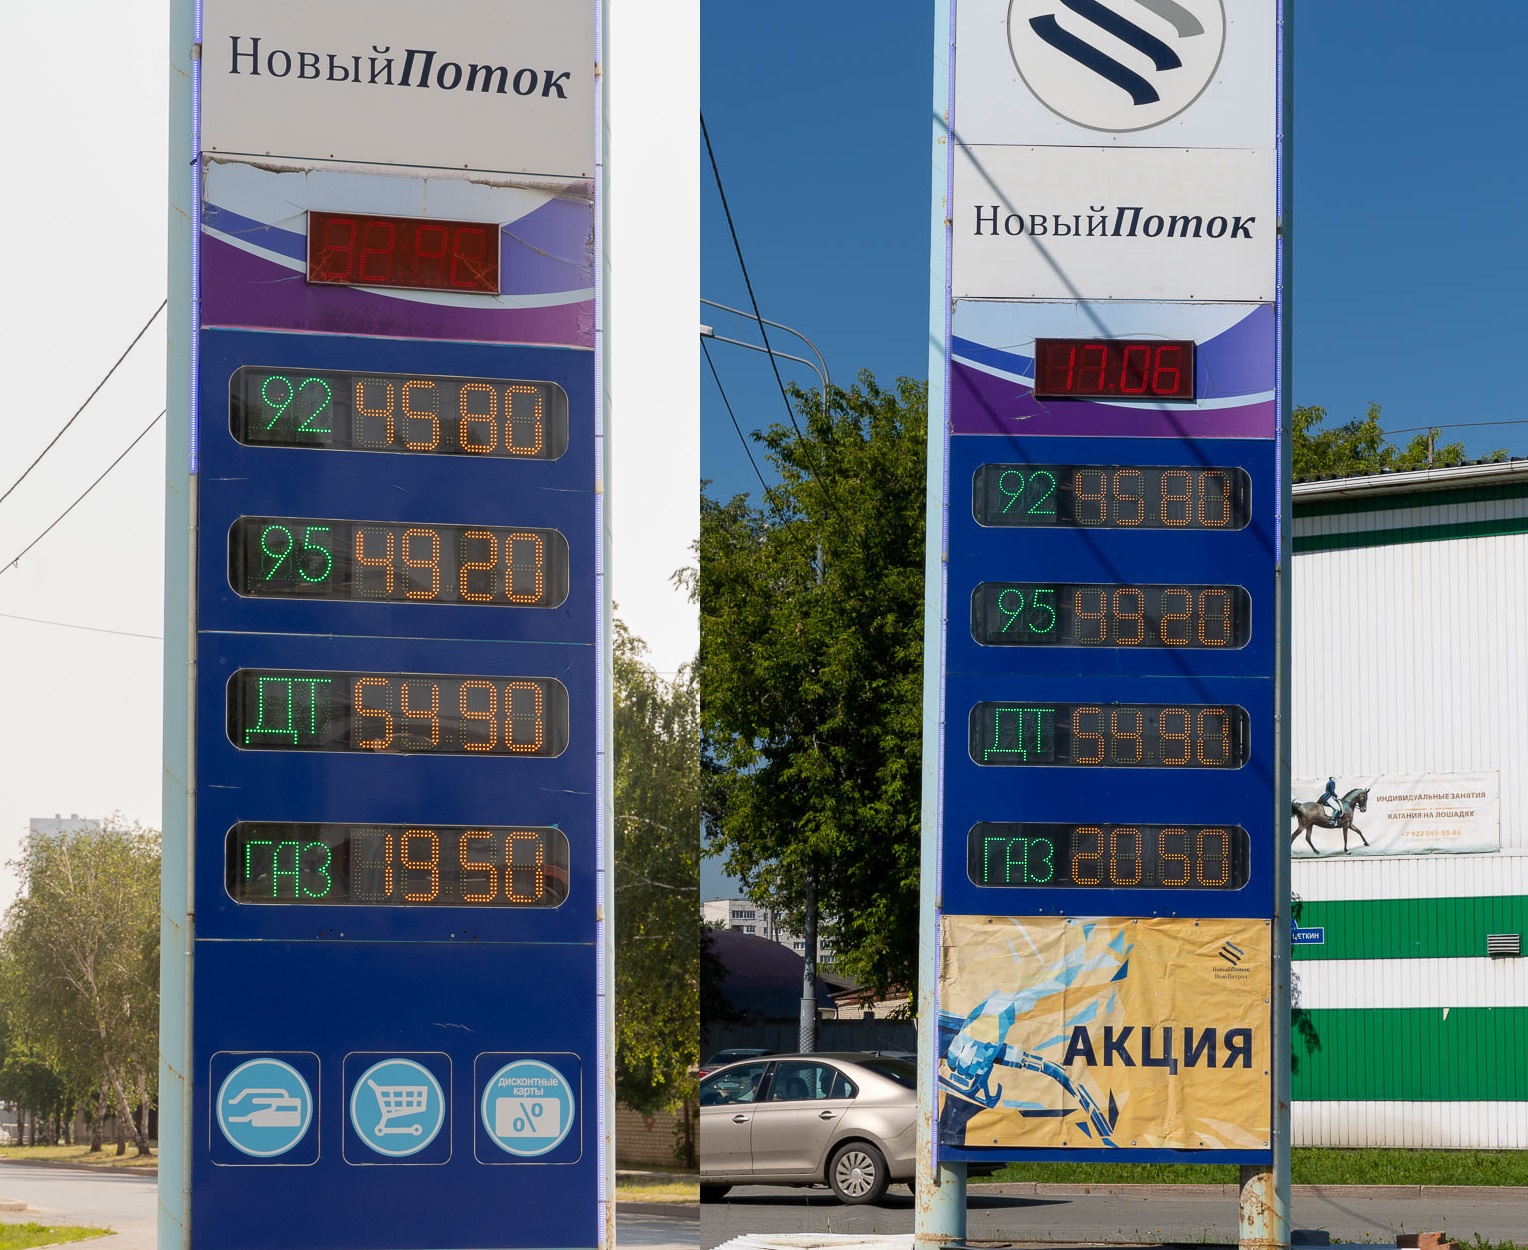 А вот и первое (и, к сожалению, единственное) понижение. Цена на газ по сравнению с июнем на этой заправке снизилась на целый рубль. Актуальный ценник — слева, справа — стоимость в июне